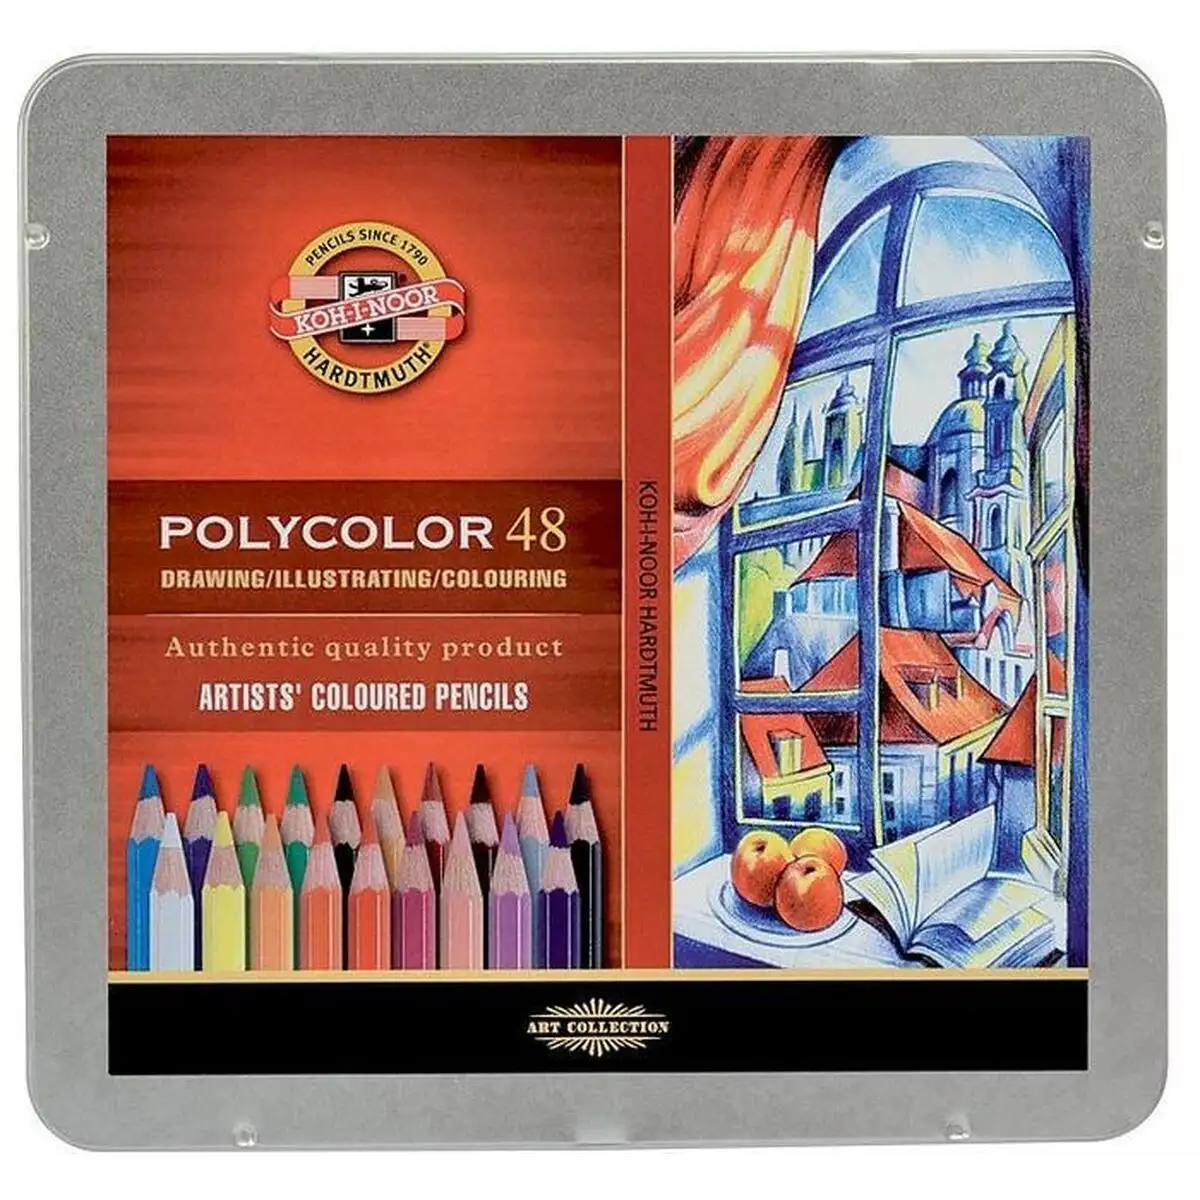 Crayons de couleur michel polycolor multicouleur 48 pieces_5028. DIAYTAR SENEGAL - L'Art de Choisir, l'Art de Vivre. Explorez notre univers de produits soigneusement sélectionnés pour vous offrir une expérience shopping riche et gratifiante.